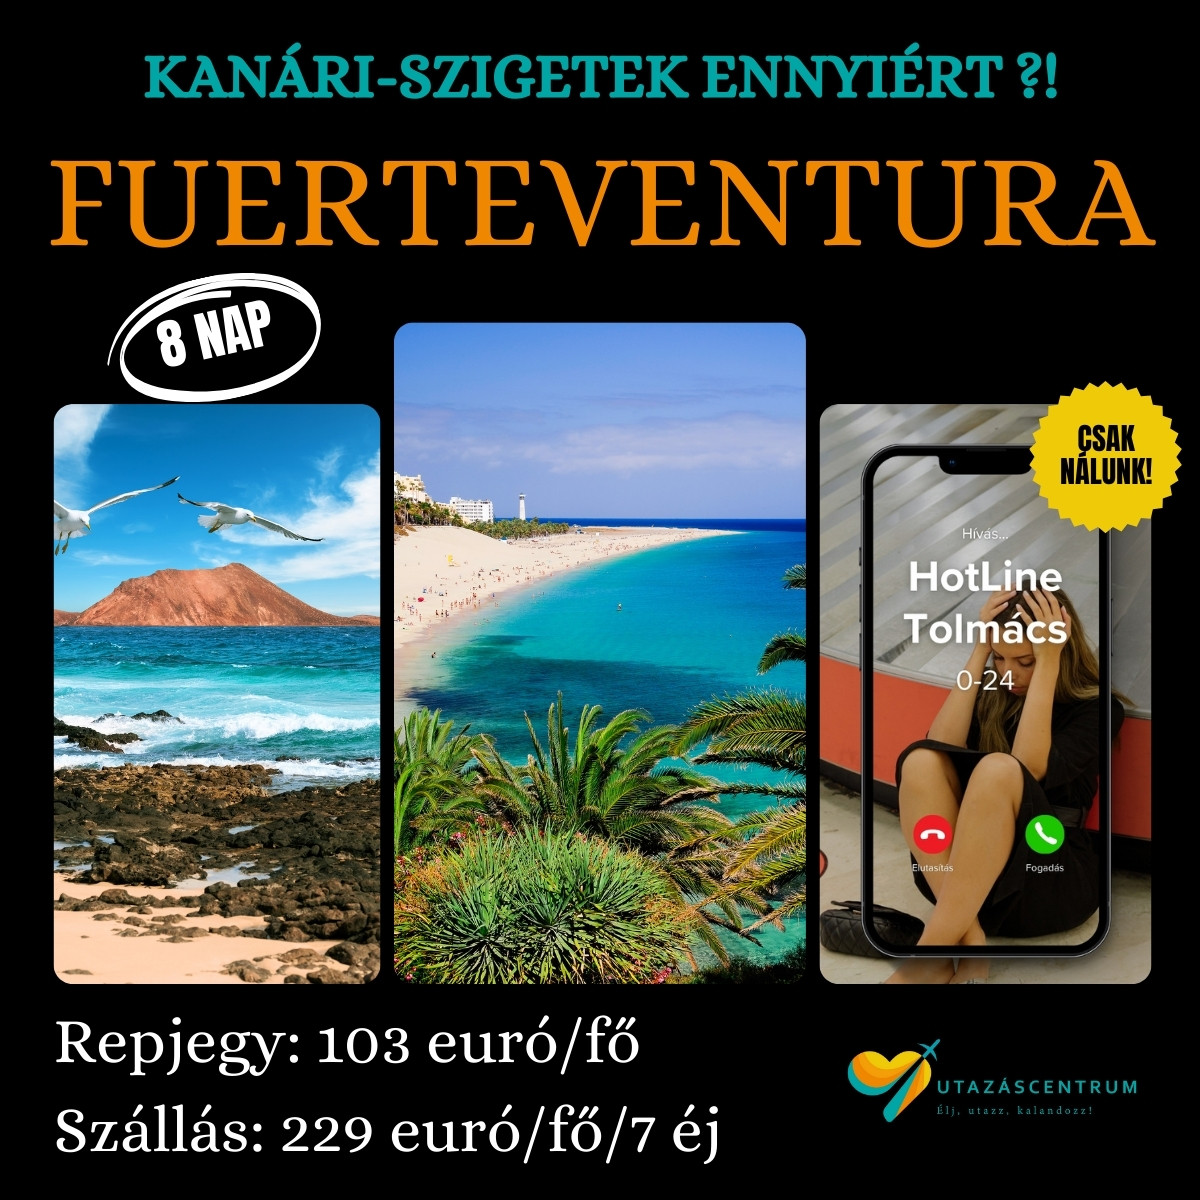 Fuerteventura Kanári szigetek nyaralás üdülés Spanyolország utazás utazáscentrum városlátogatás blog